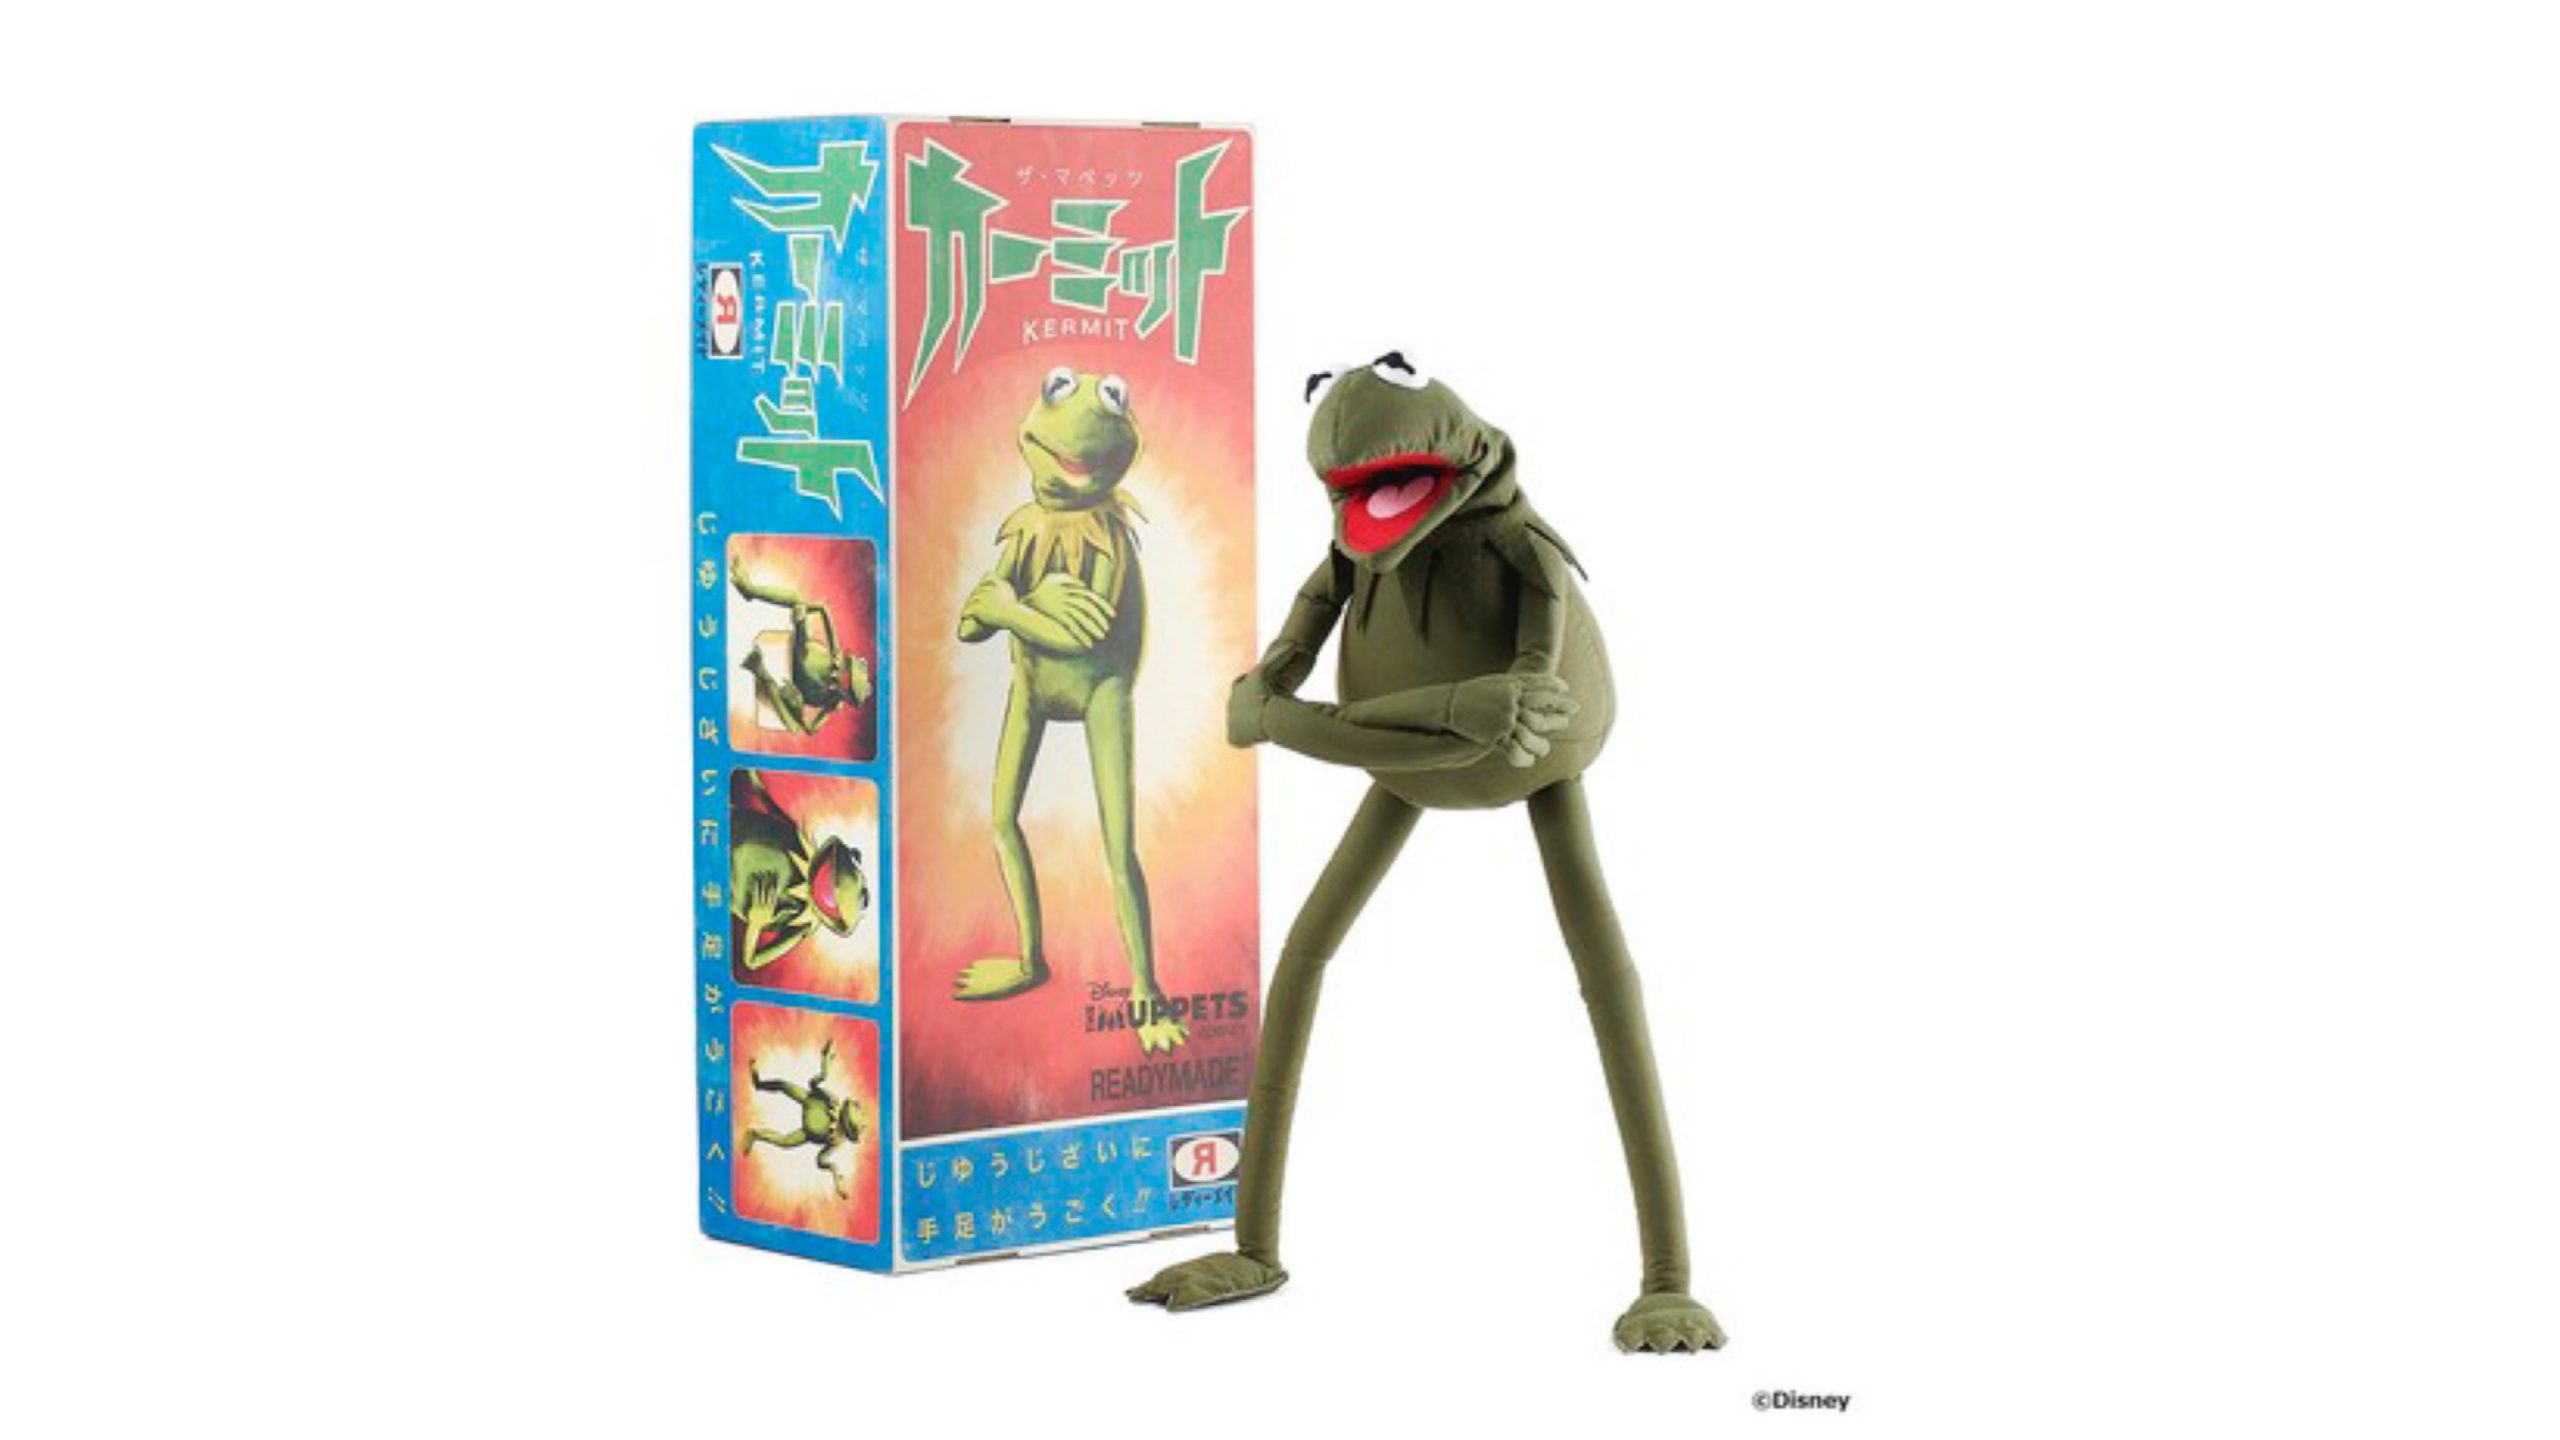 READYMADE 发布特别版「Kermitthe Frog」玩偶